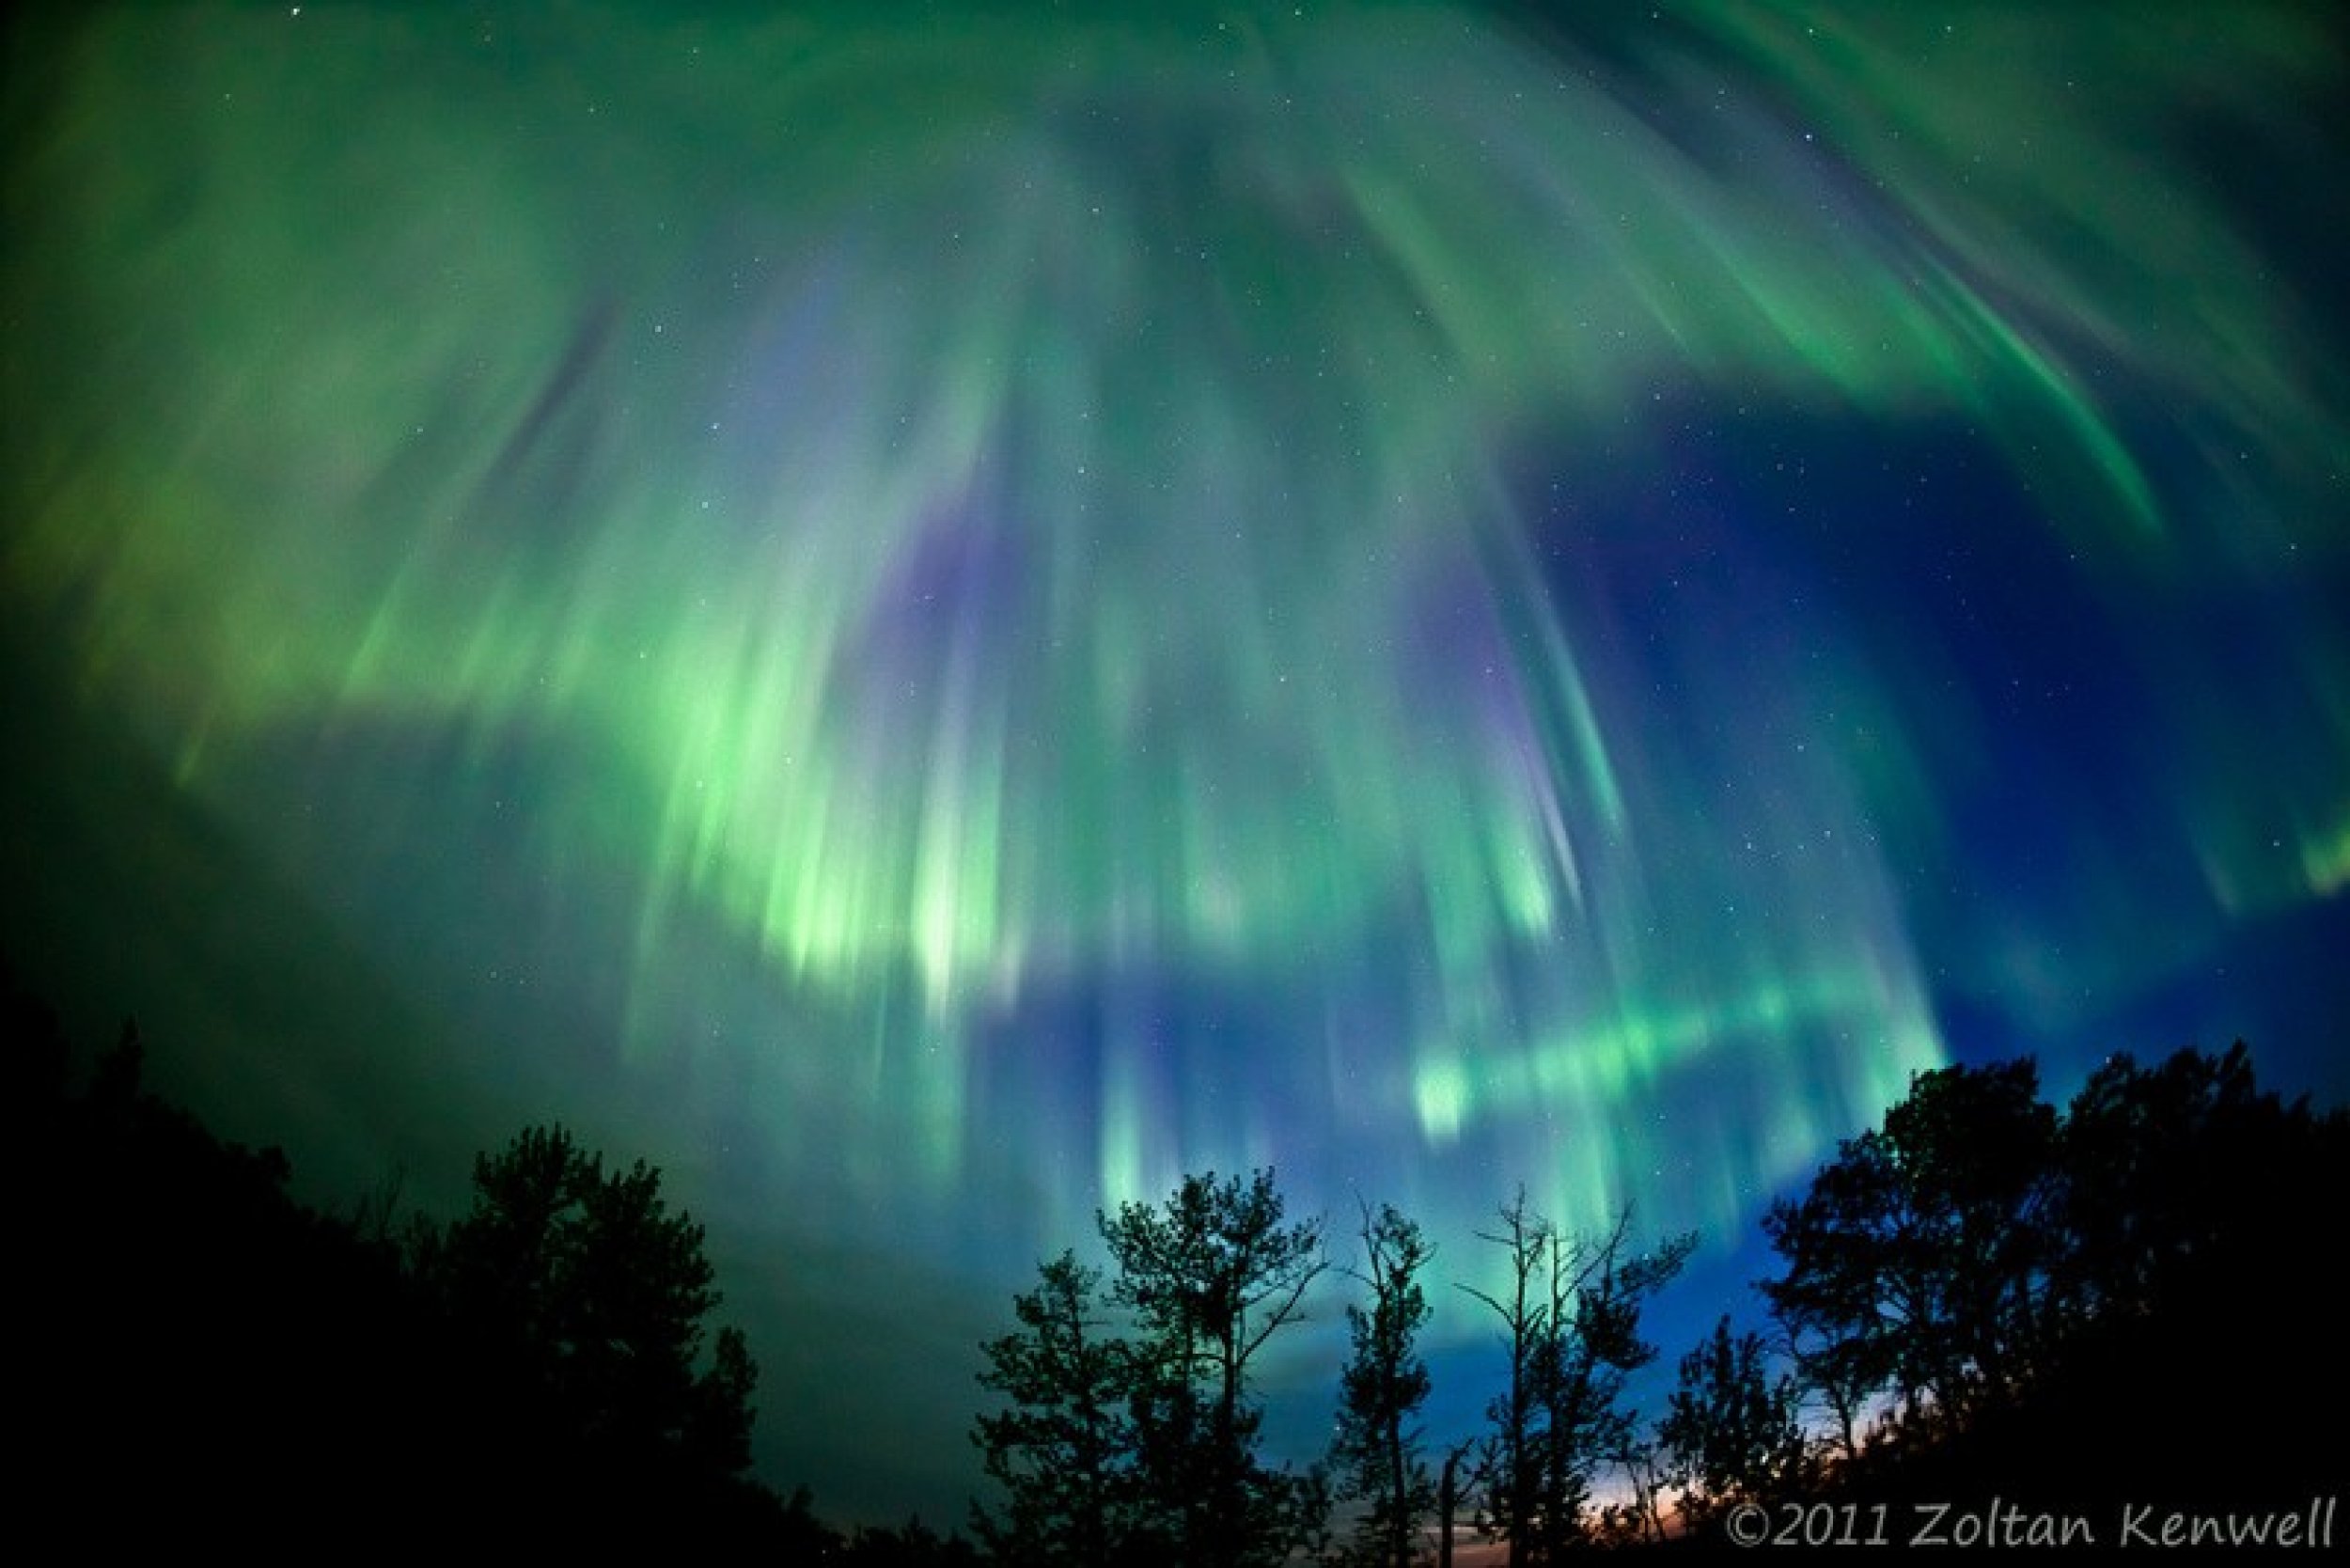 Raining auroras in the Alberta prairies east of Edmonton, Canada.